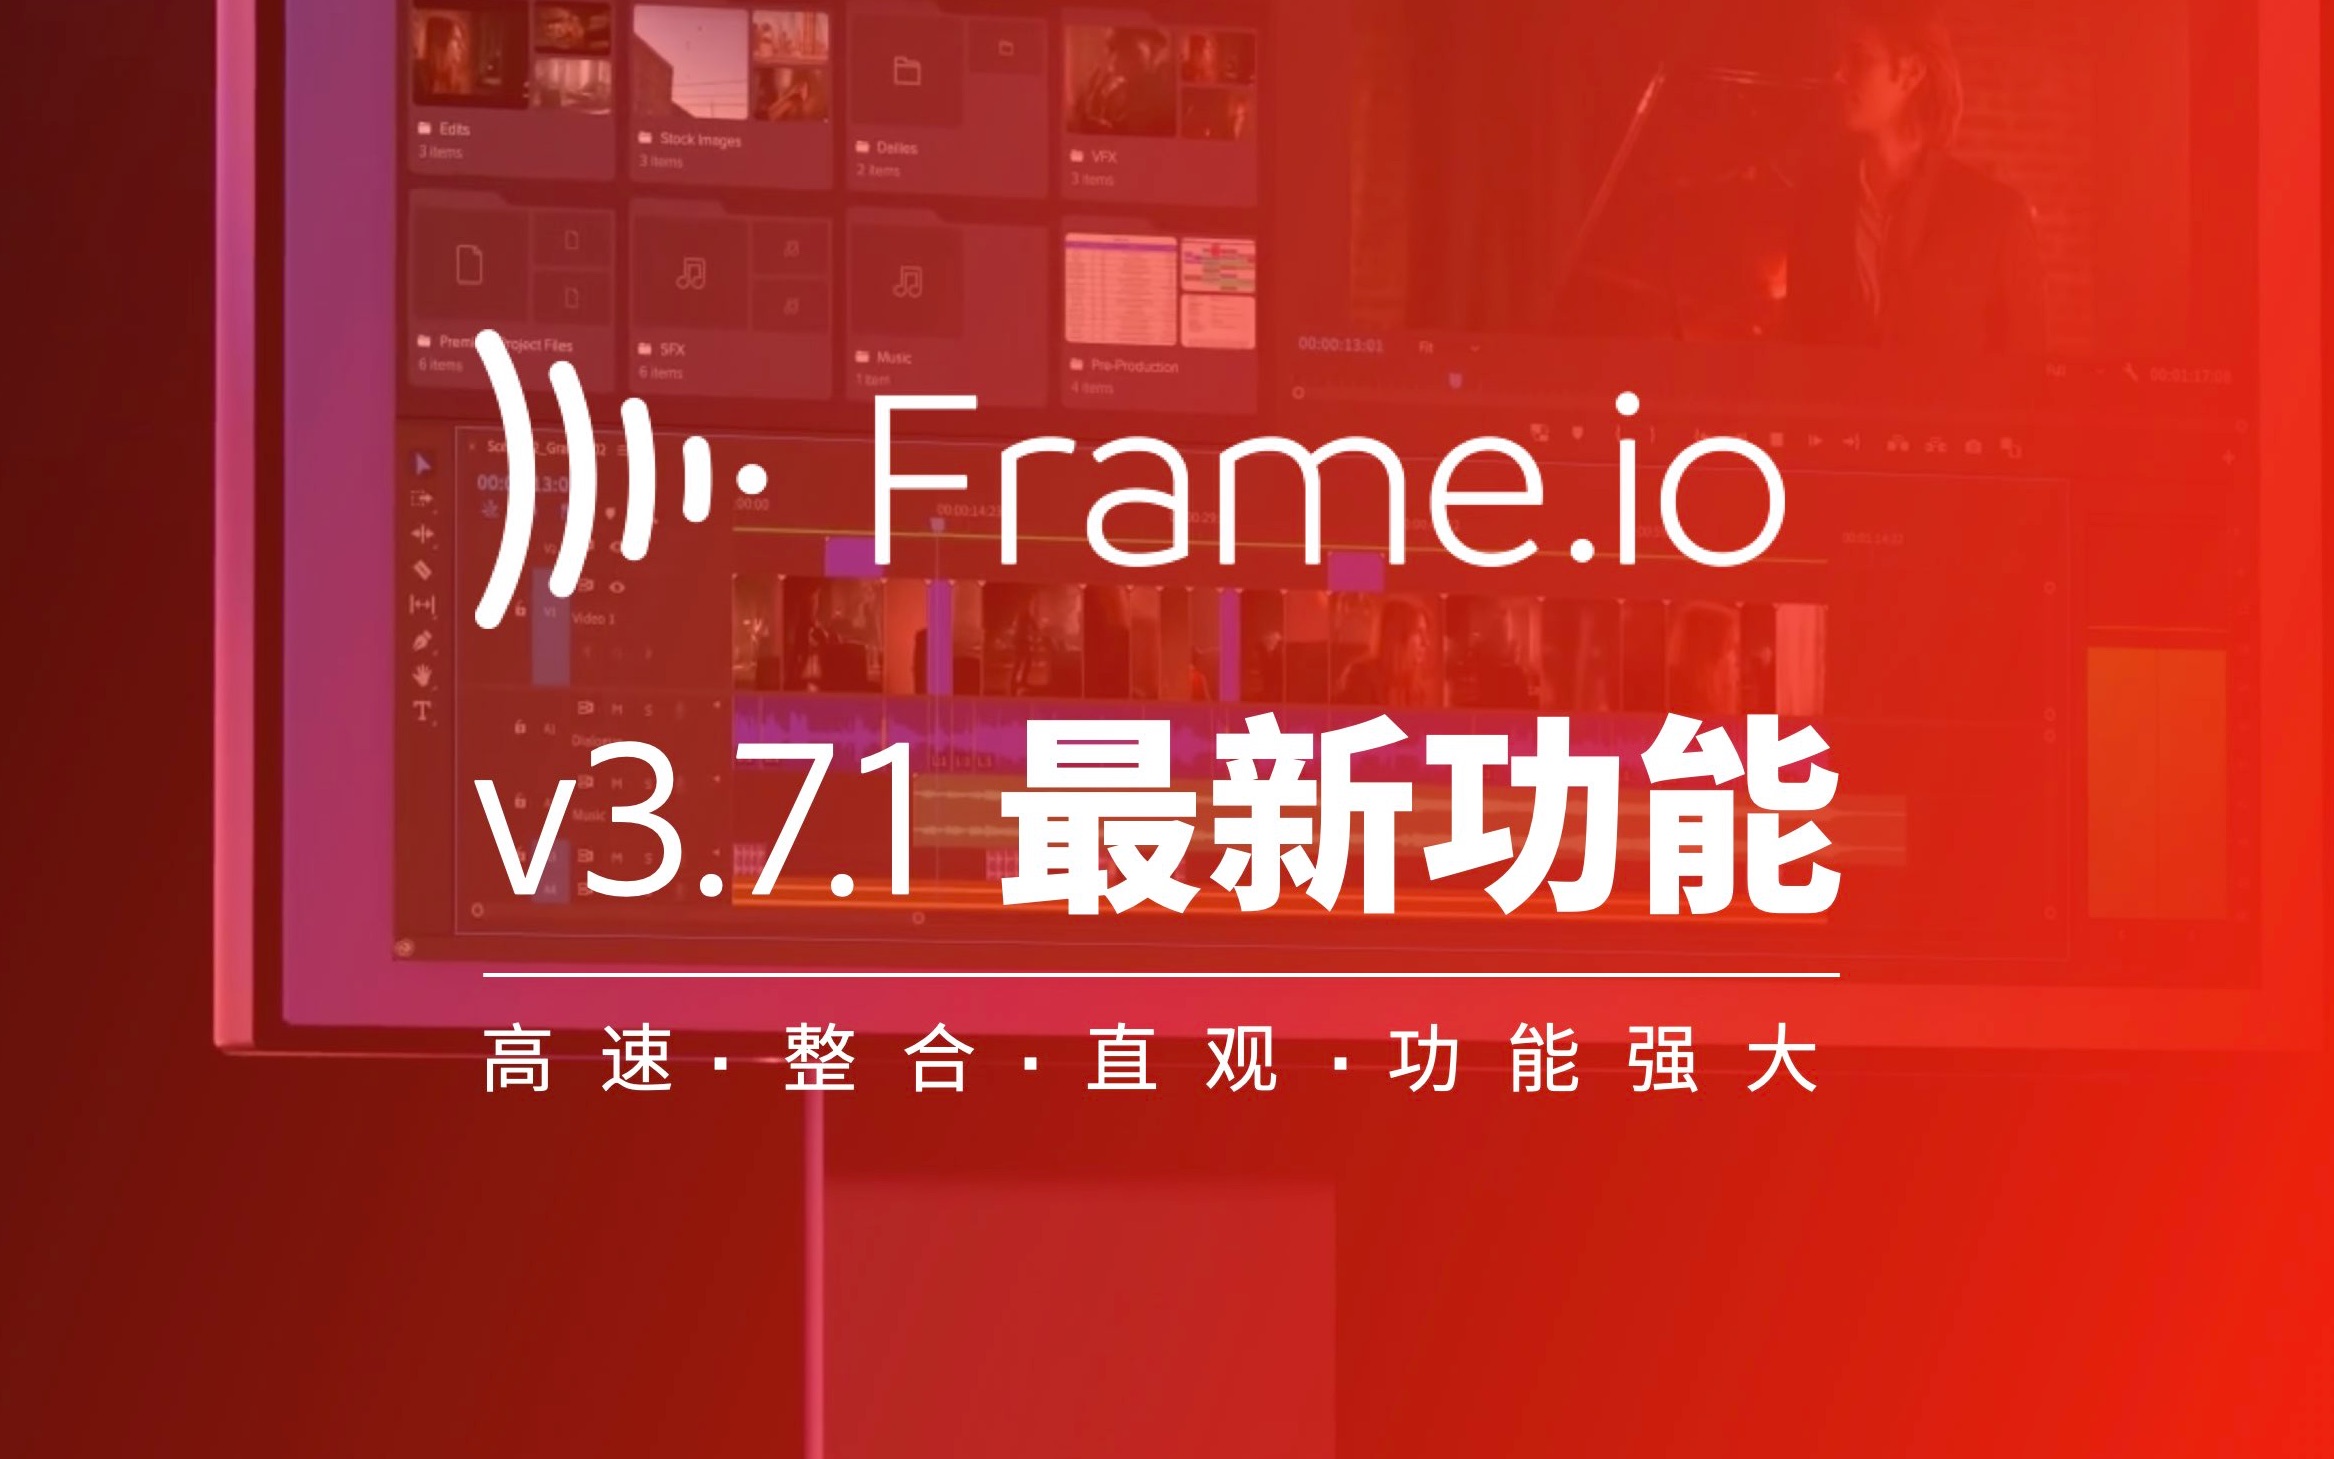 Frame IO v3.7.1最新功能